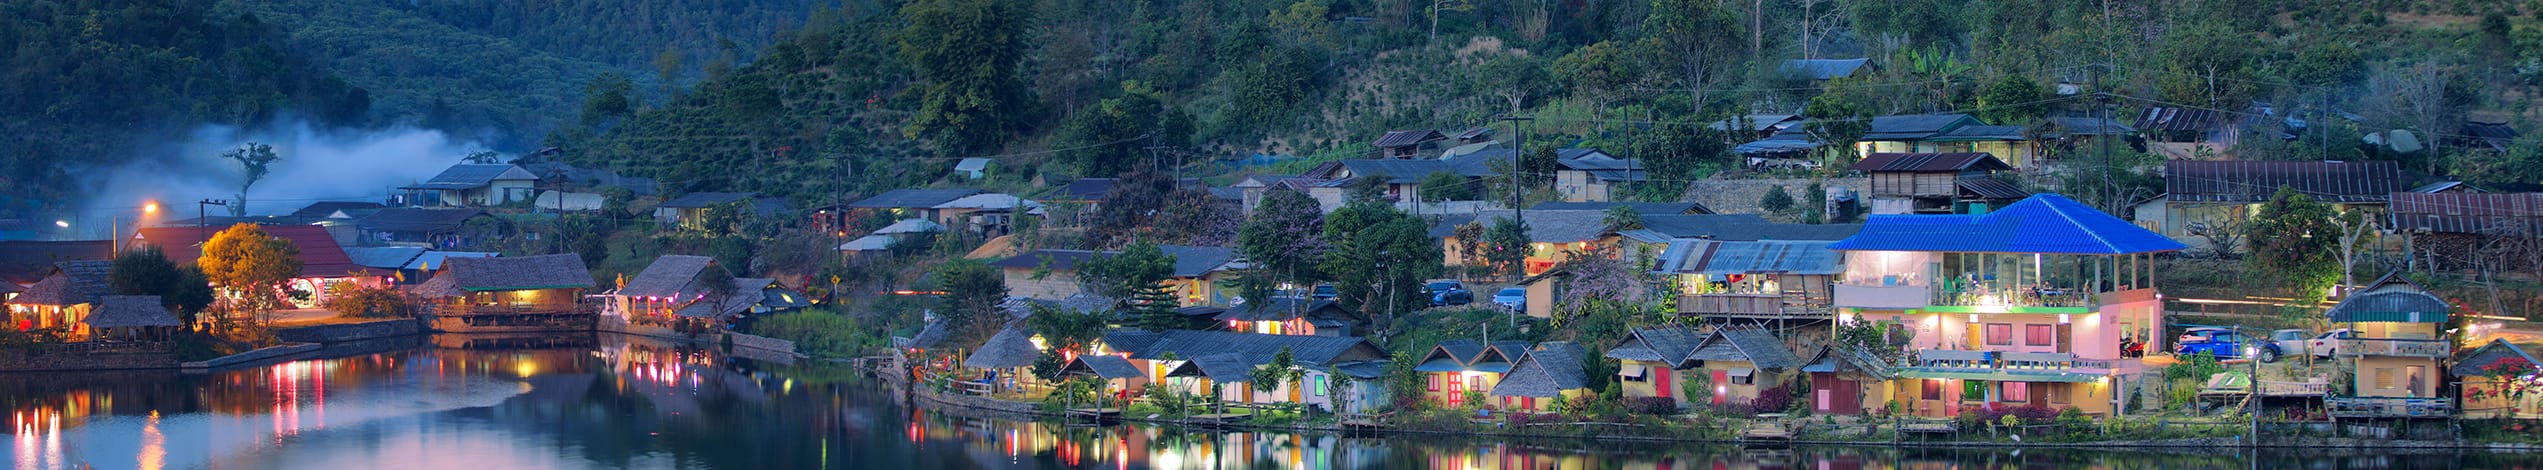 Rak Thai Village, Mae Hong Son, Thailand